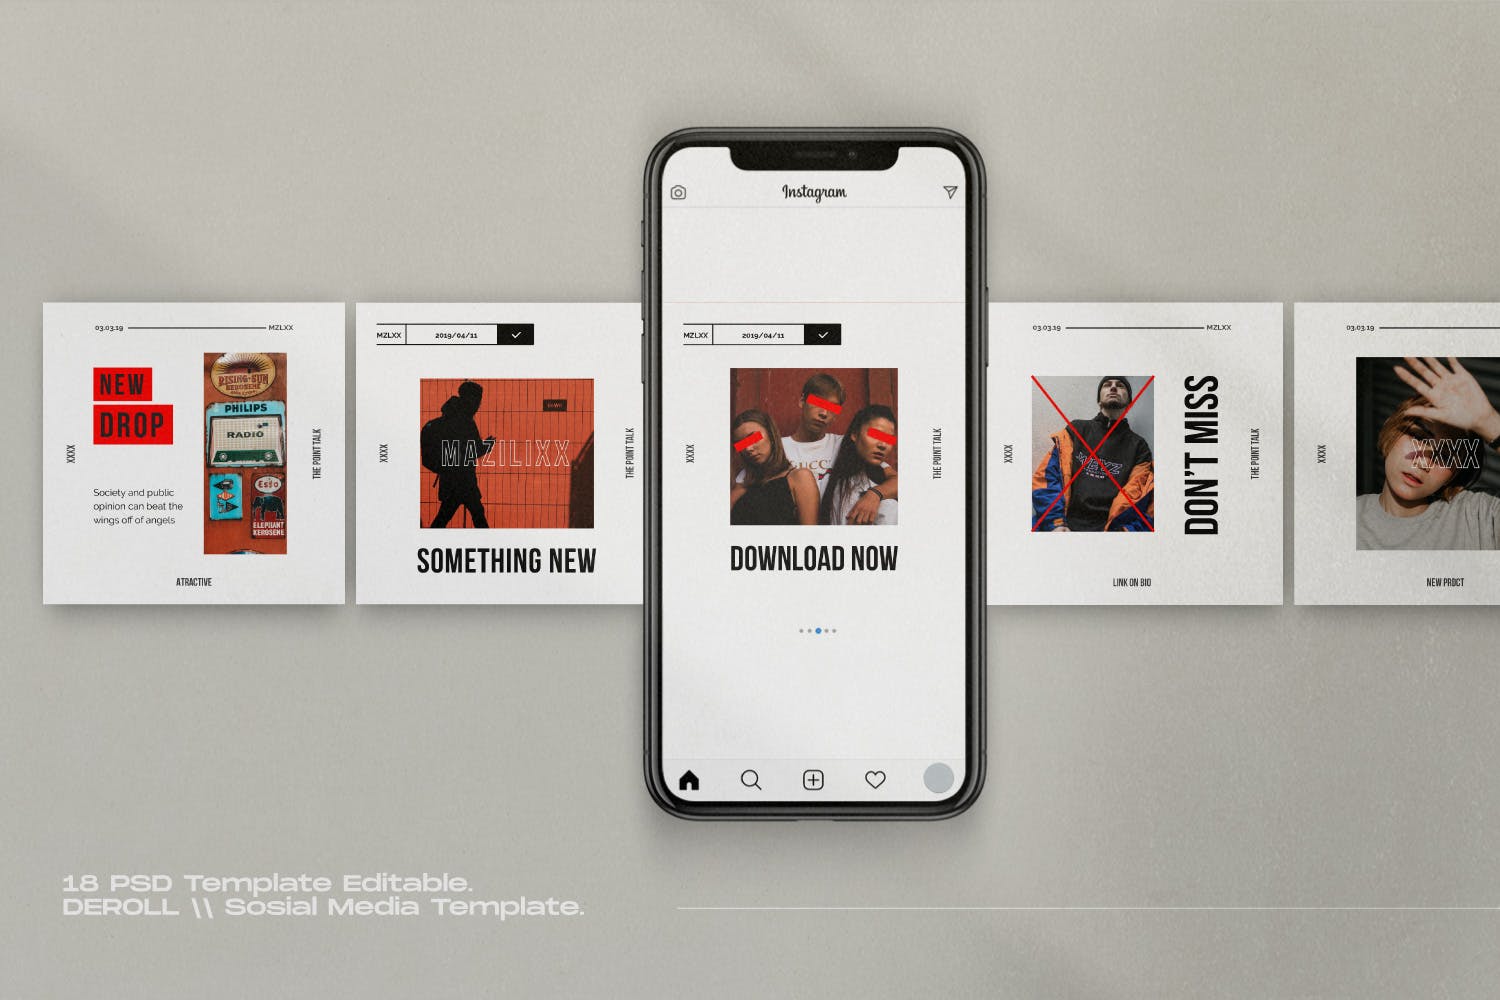 时尚潮流主题Instagram贴图&品牌故事设计素材包v1 Mazilixx Pack 1 – Instagram Social Media + Stories插图2